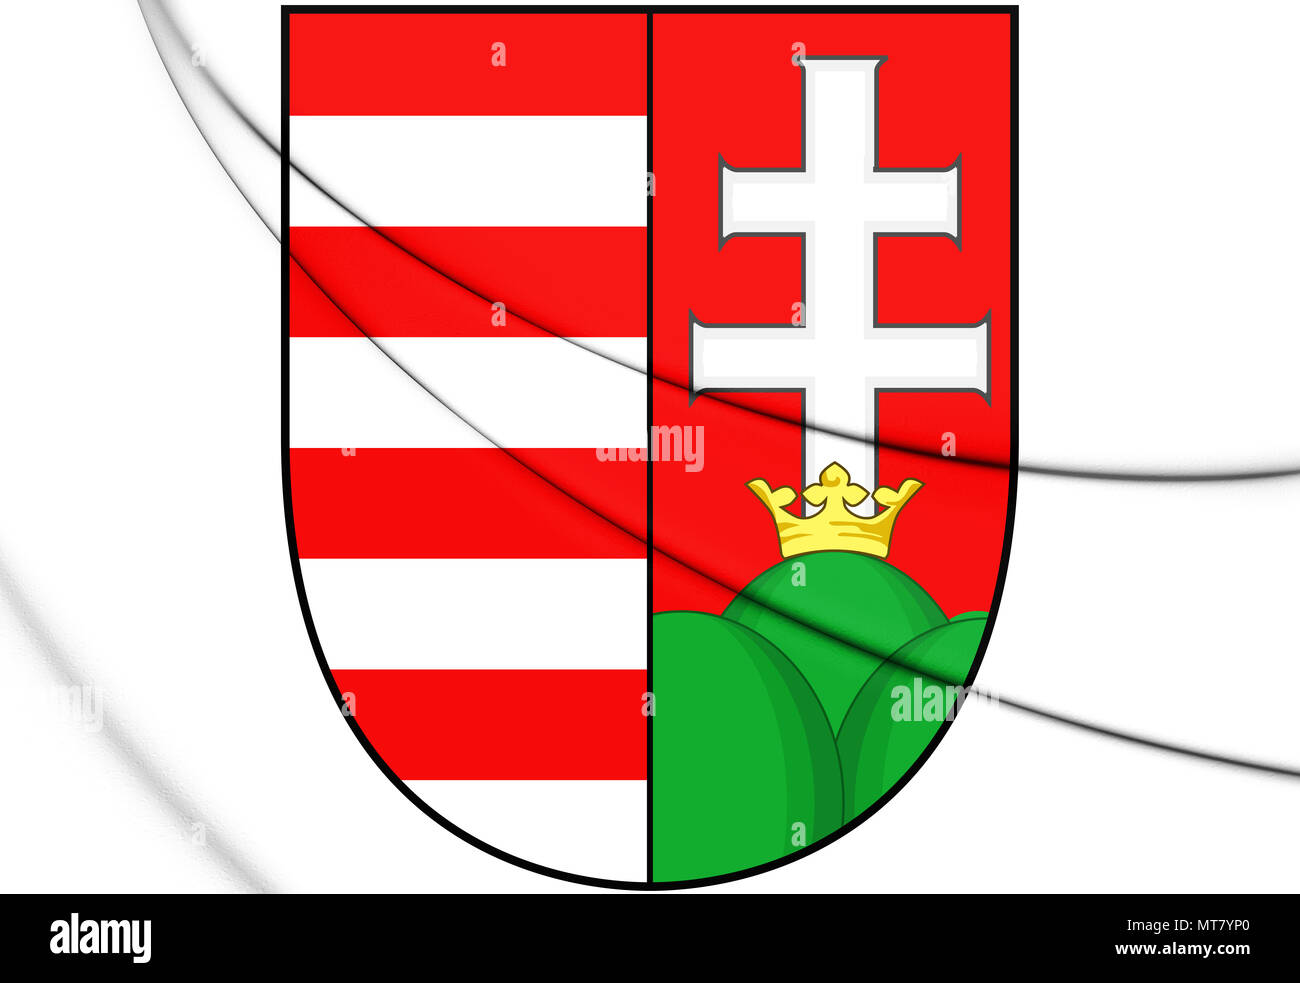 Magnetaufkleber mit dem Wappen, den Farben der Flagge und den Grenzen des  alten Ungarn Stockfotografie - Alamy